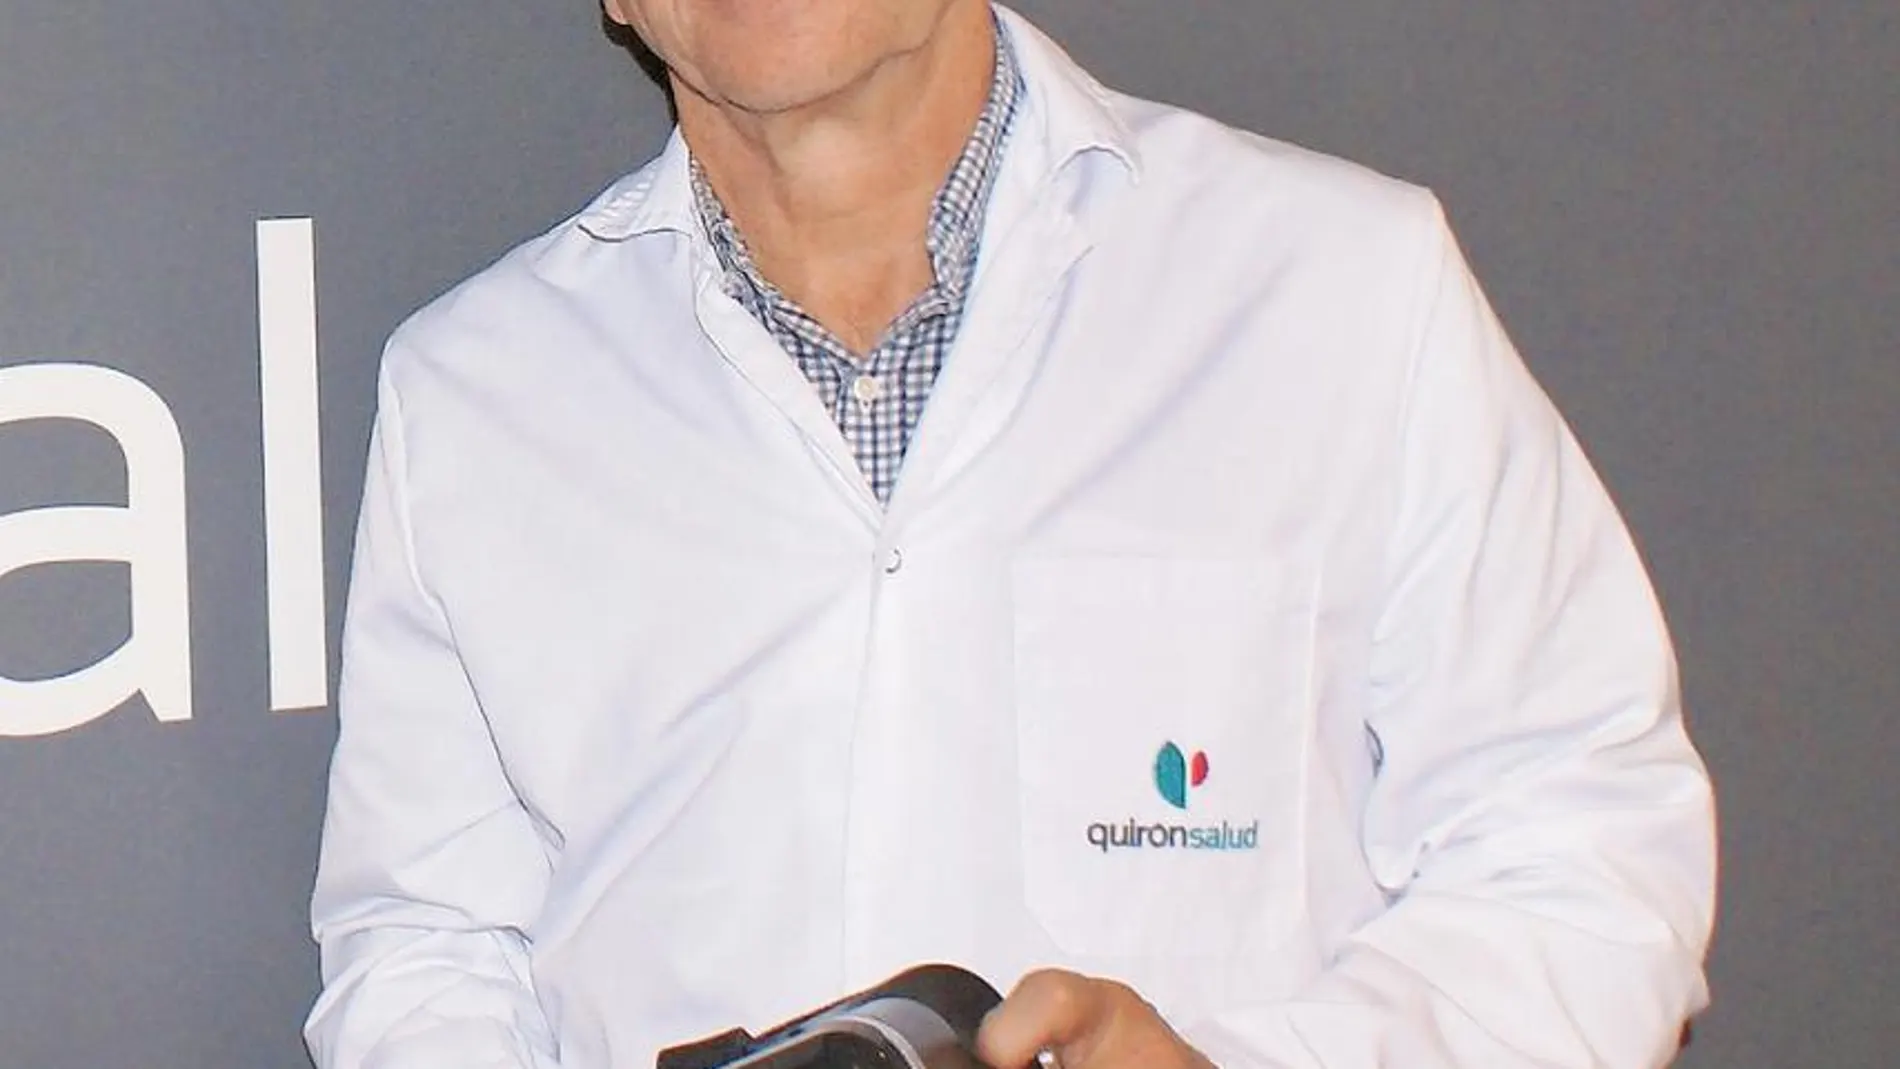 Dr. Gonzalo Pin Arboledas. Unidad de Pediatría del Hospital Quironsalud Valencia